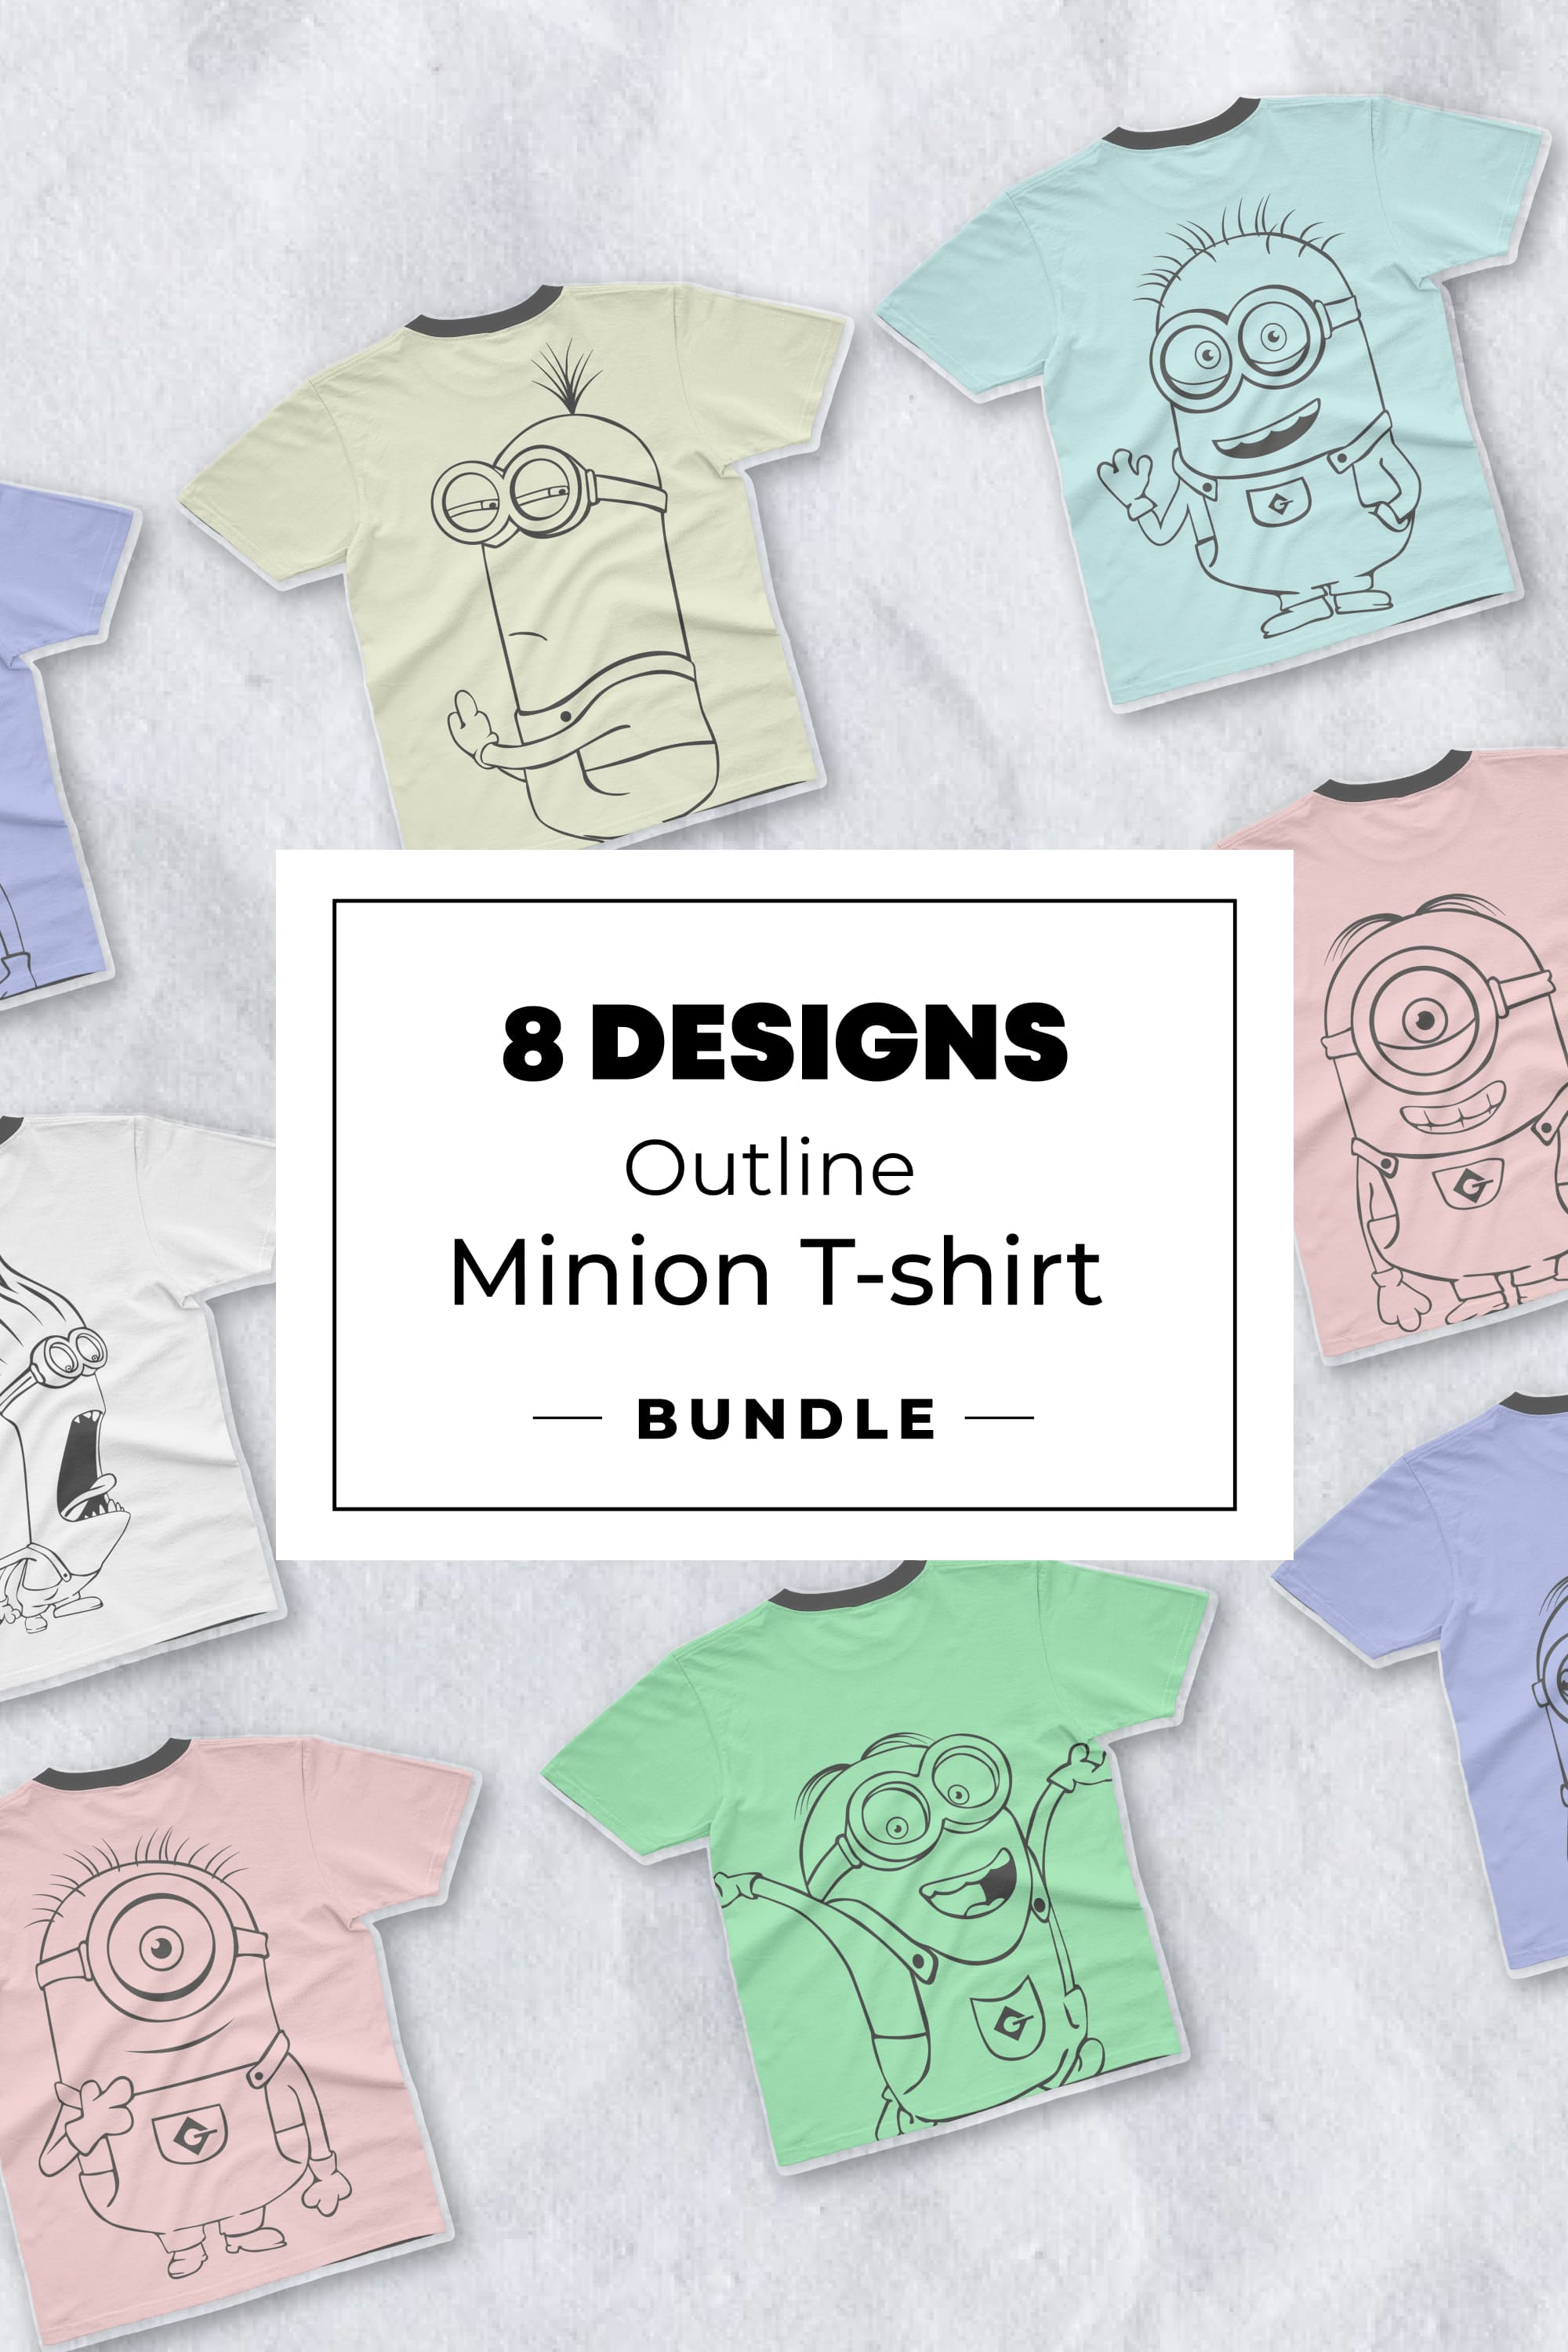 Outline Minion T-shirt Designs - Pinterest.